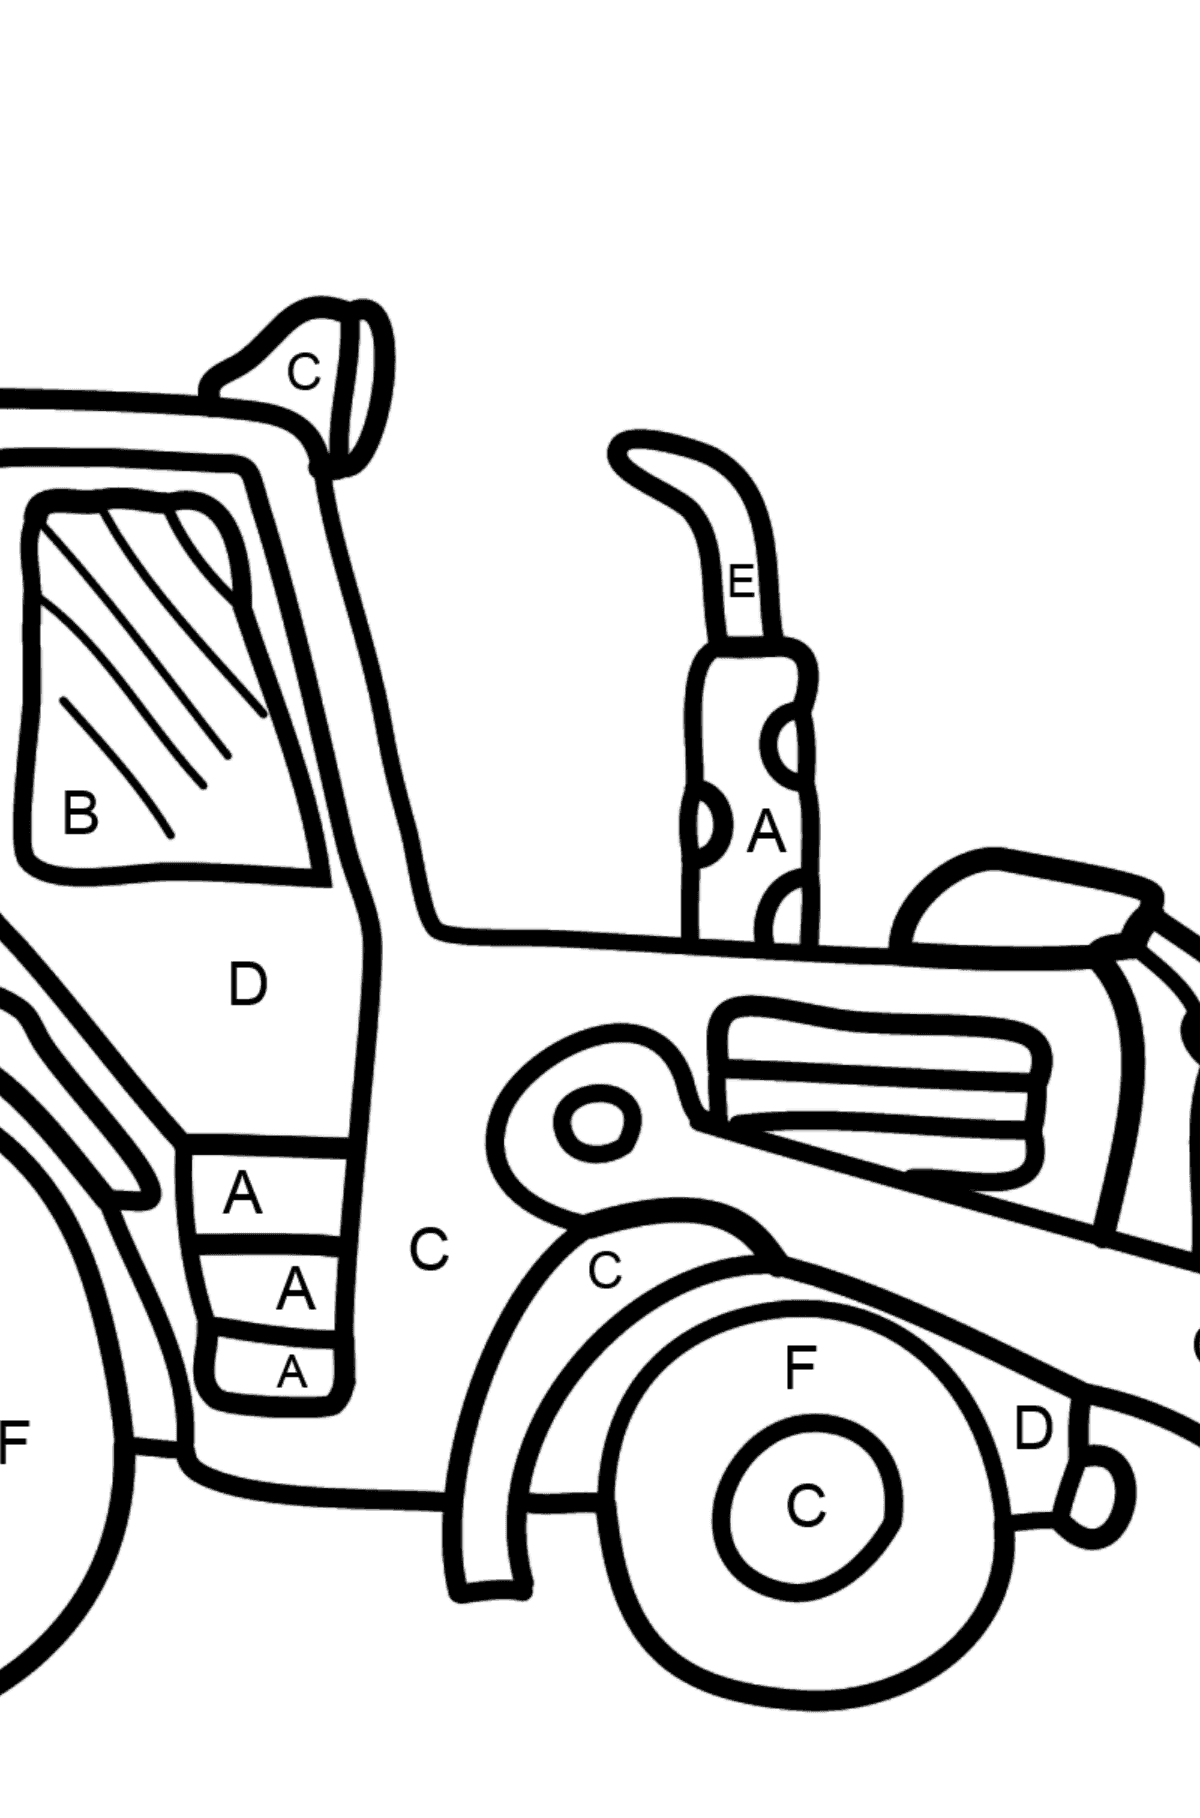 Coloriage - Un tracteur jaune - Coloriage par Lettres pour les Enfants